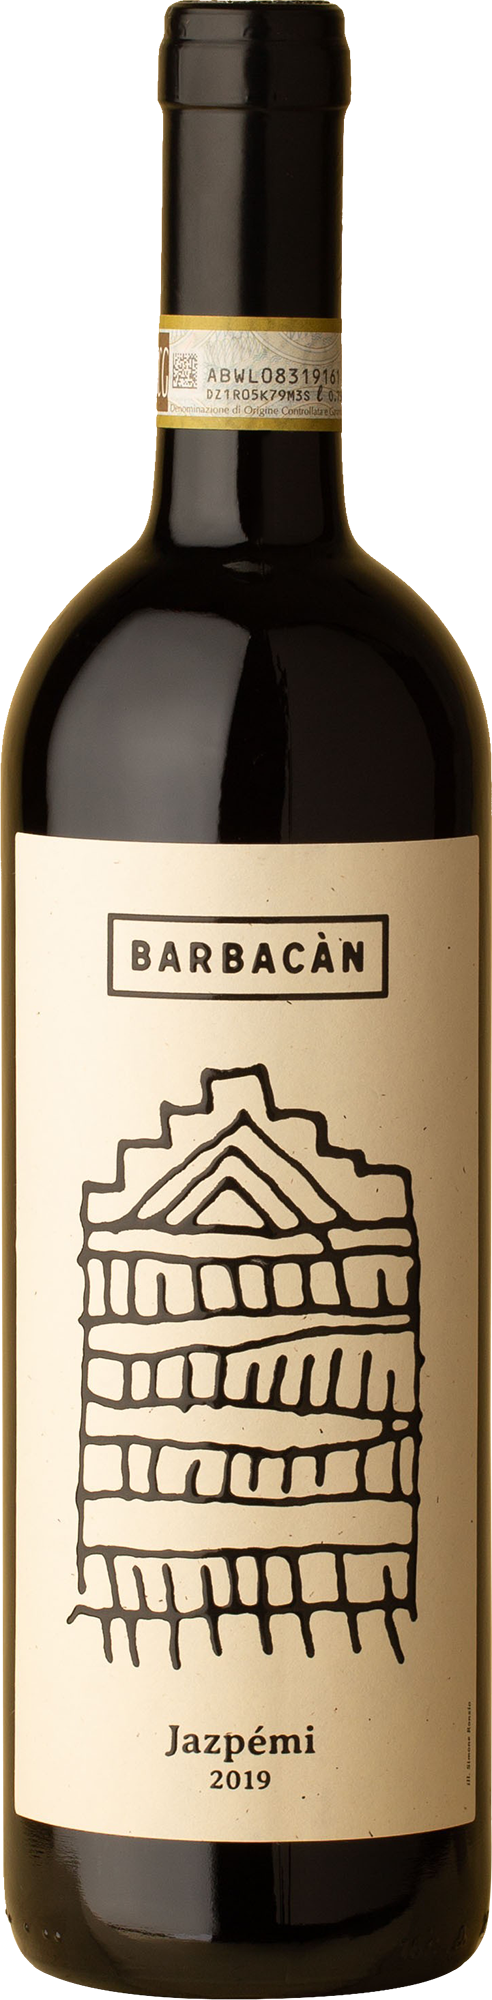 Barbacan - Jazpemi Nebbiolo 2019 Red Wine